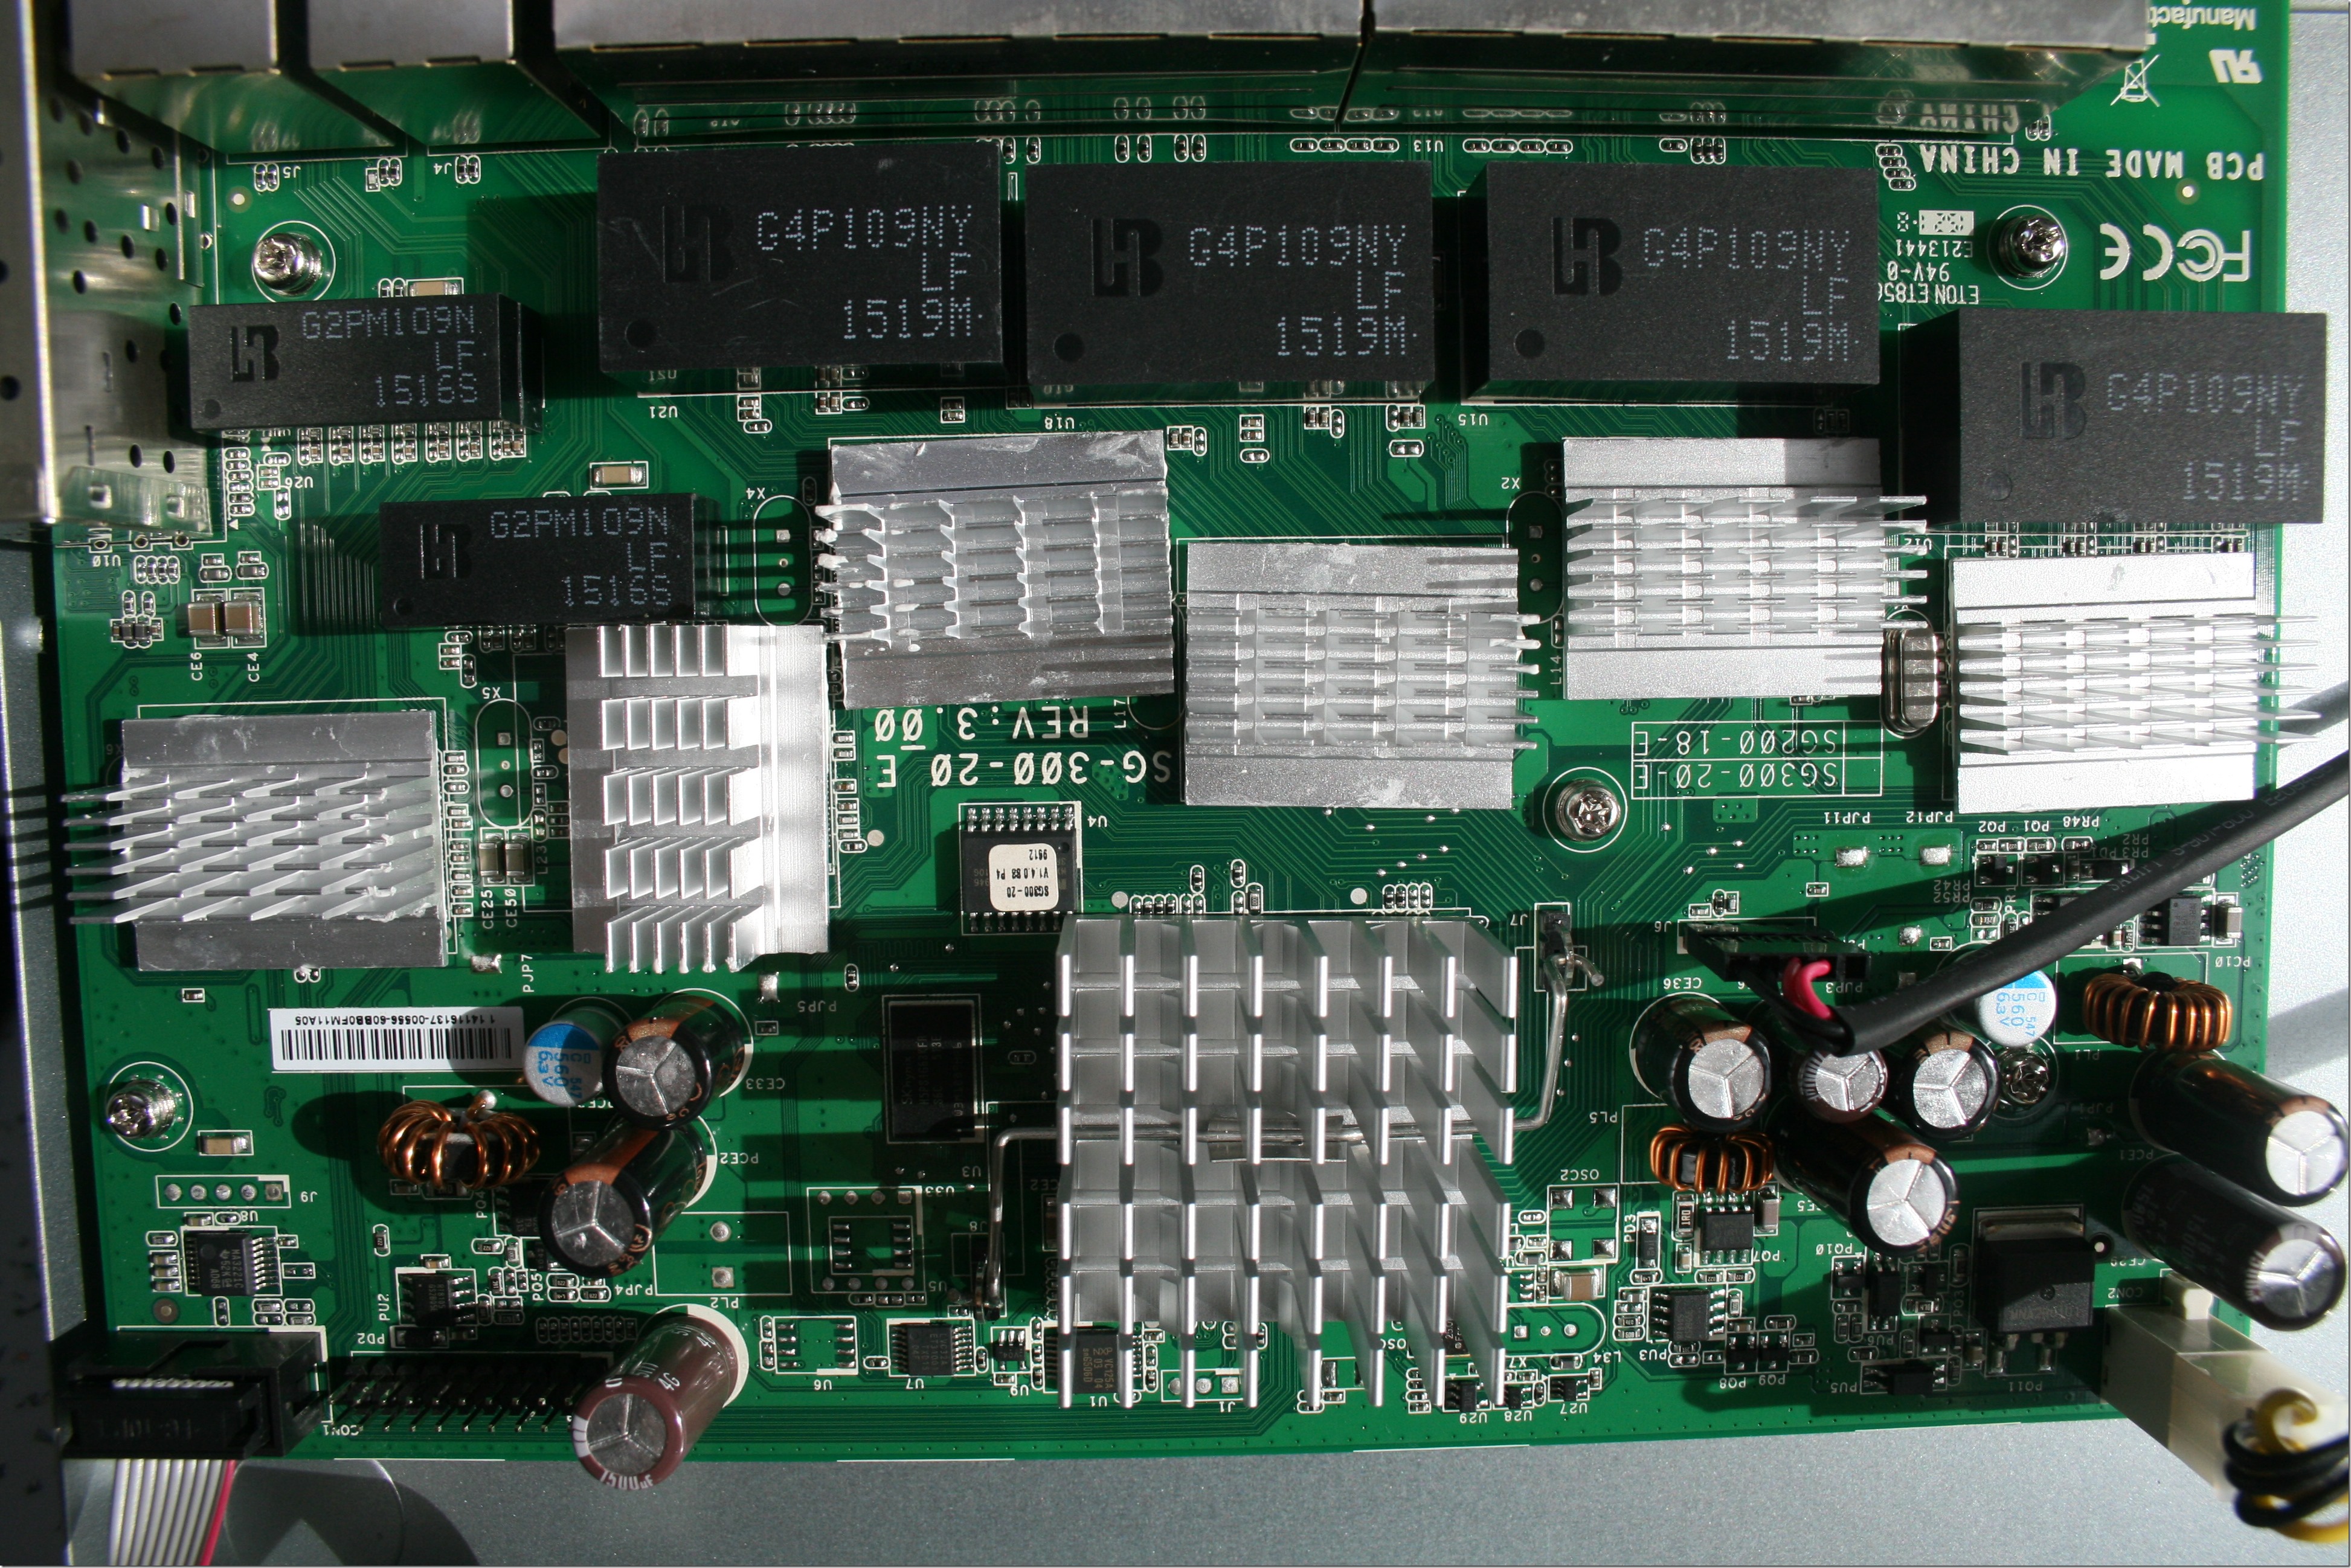 Cisco SG300-20 Switch Internals